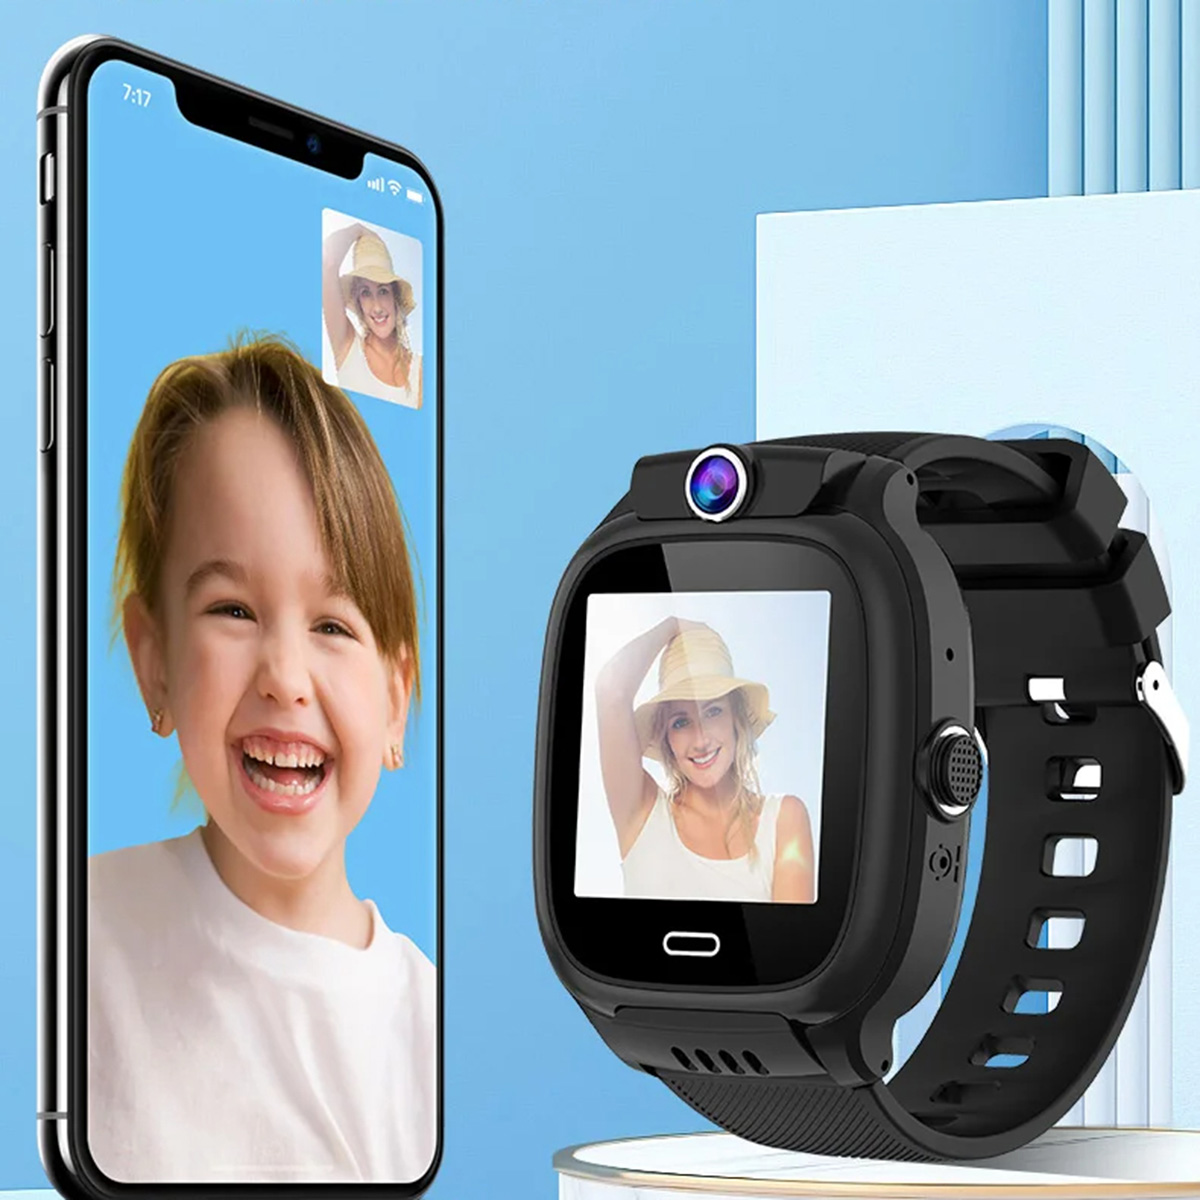 Smartwatch Relógio Inteligente Klack Para Crianças Com Gps Localizador E Comunicação 4g - Preto